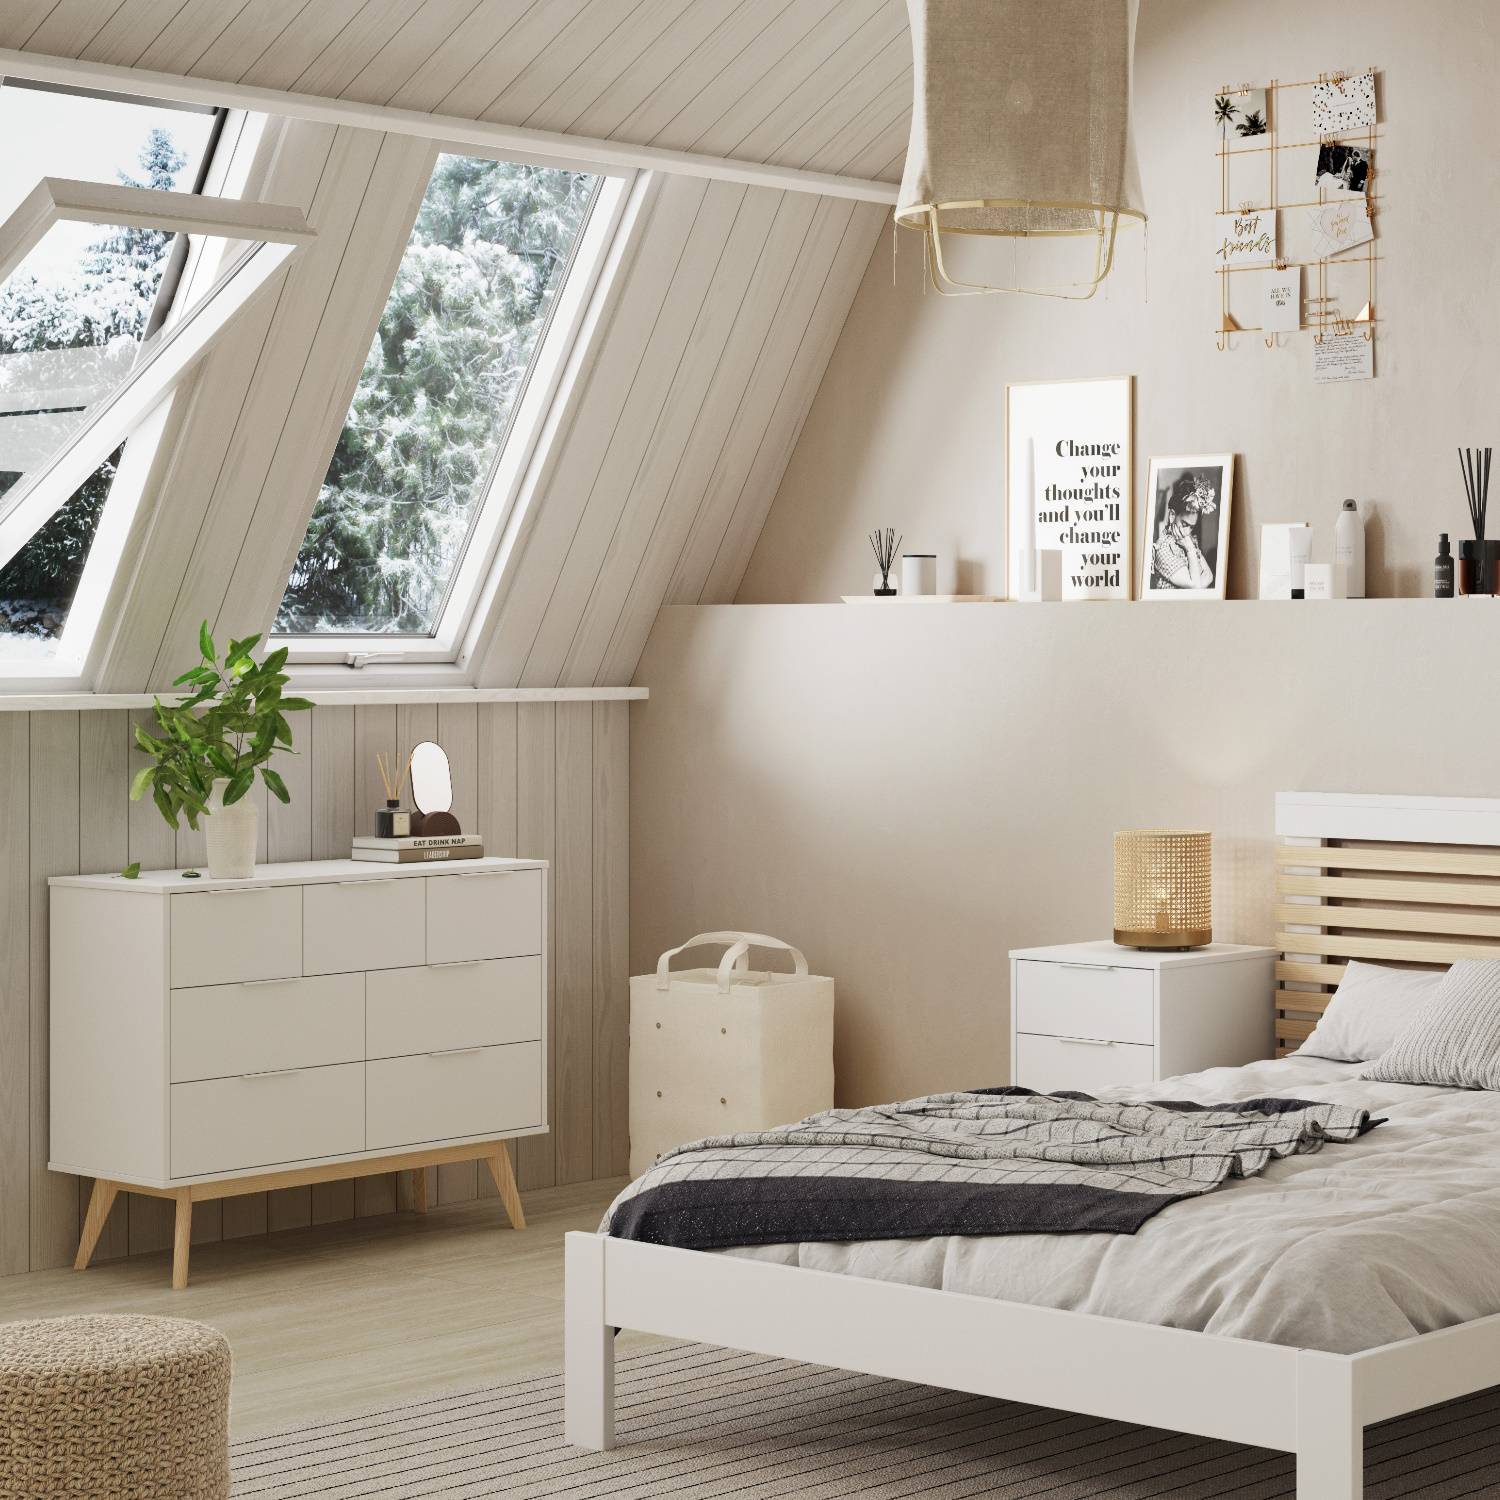 7 cómodas Ikea blancas que son dos en uno ¡para toda la casa!